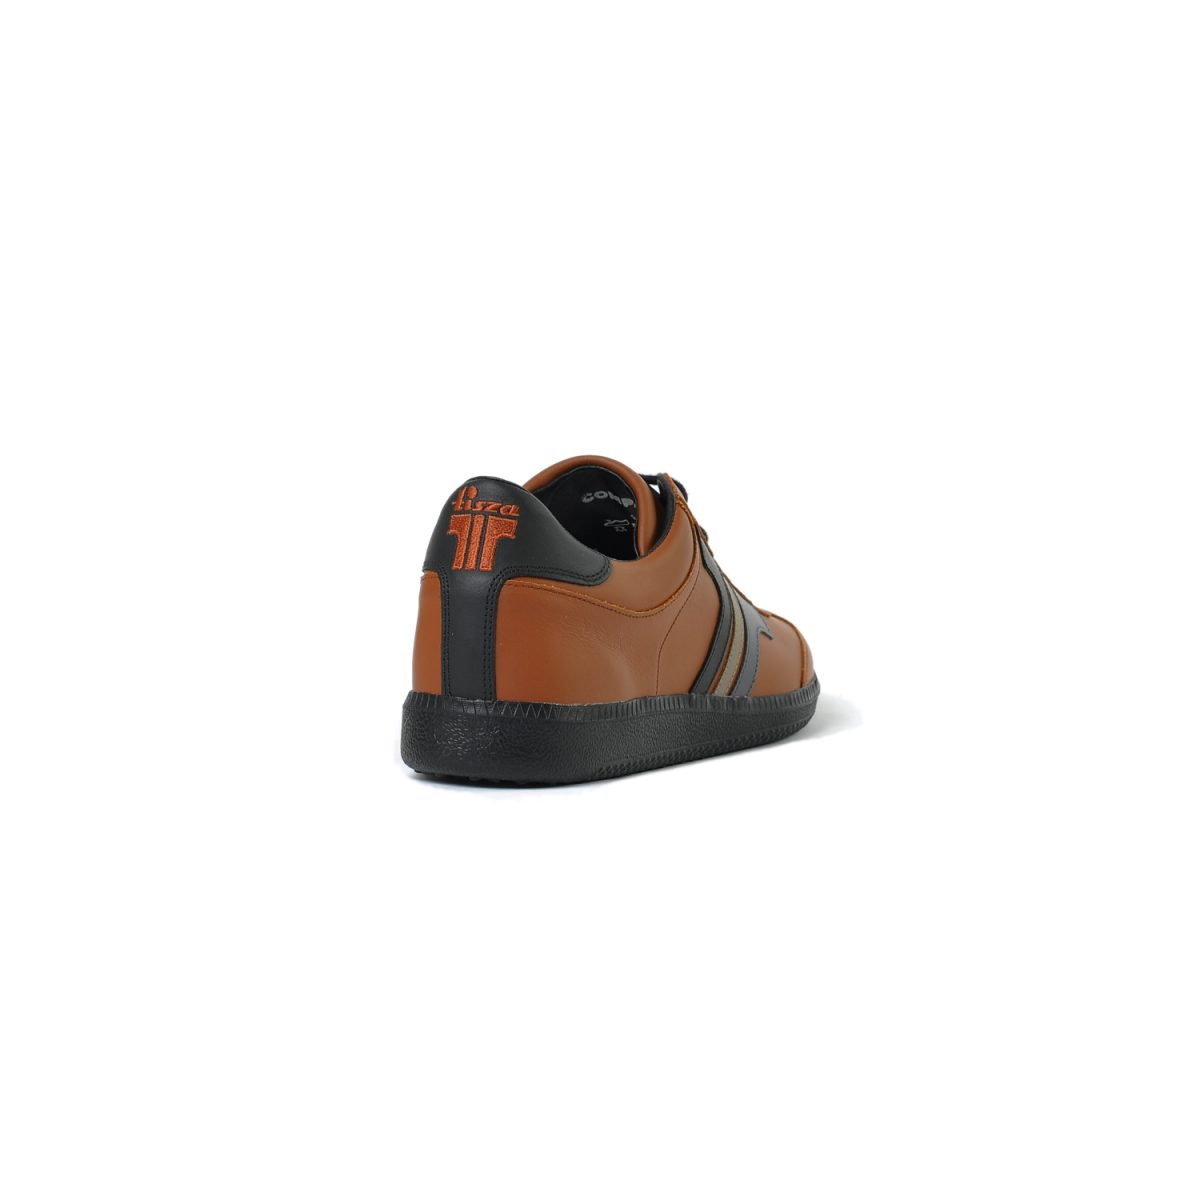 Tisza shoes - Compakt - Mahagony-black-grey-earth